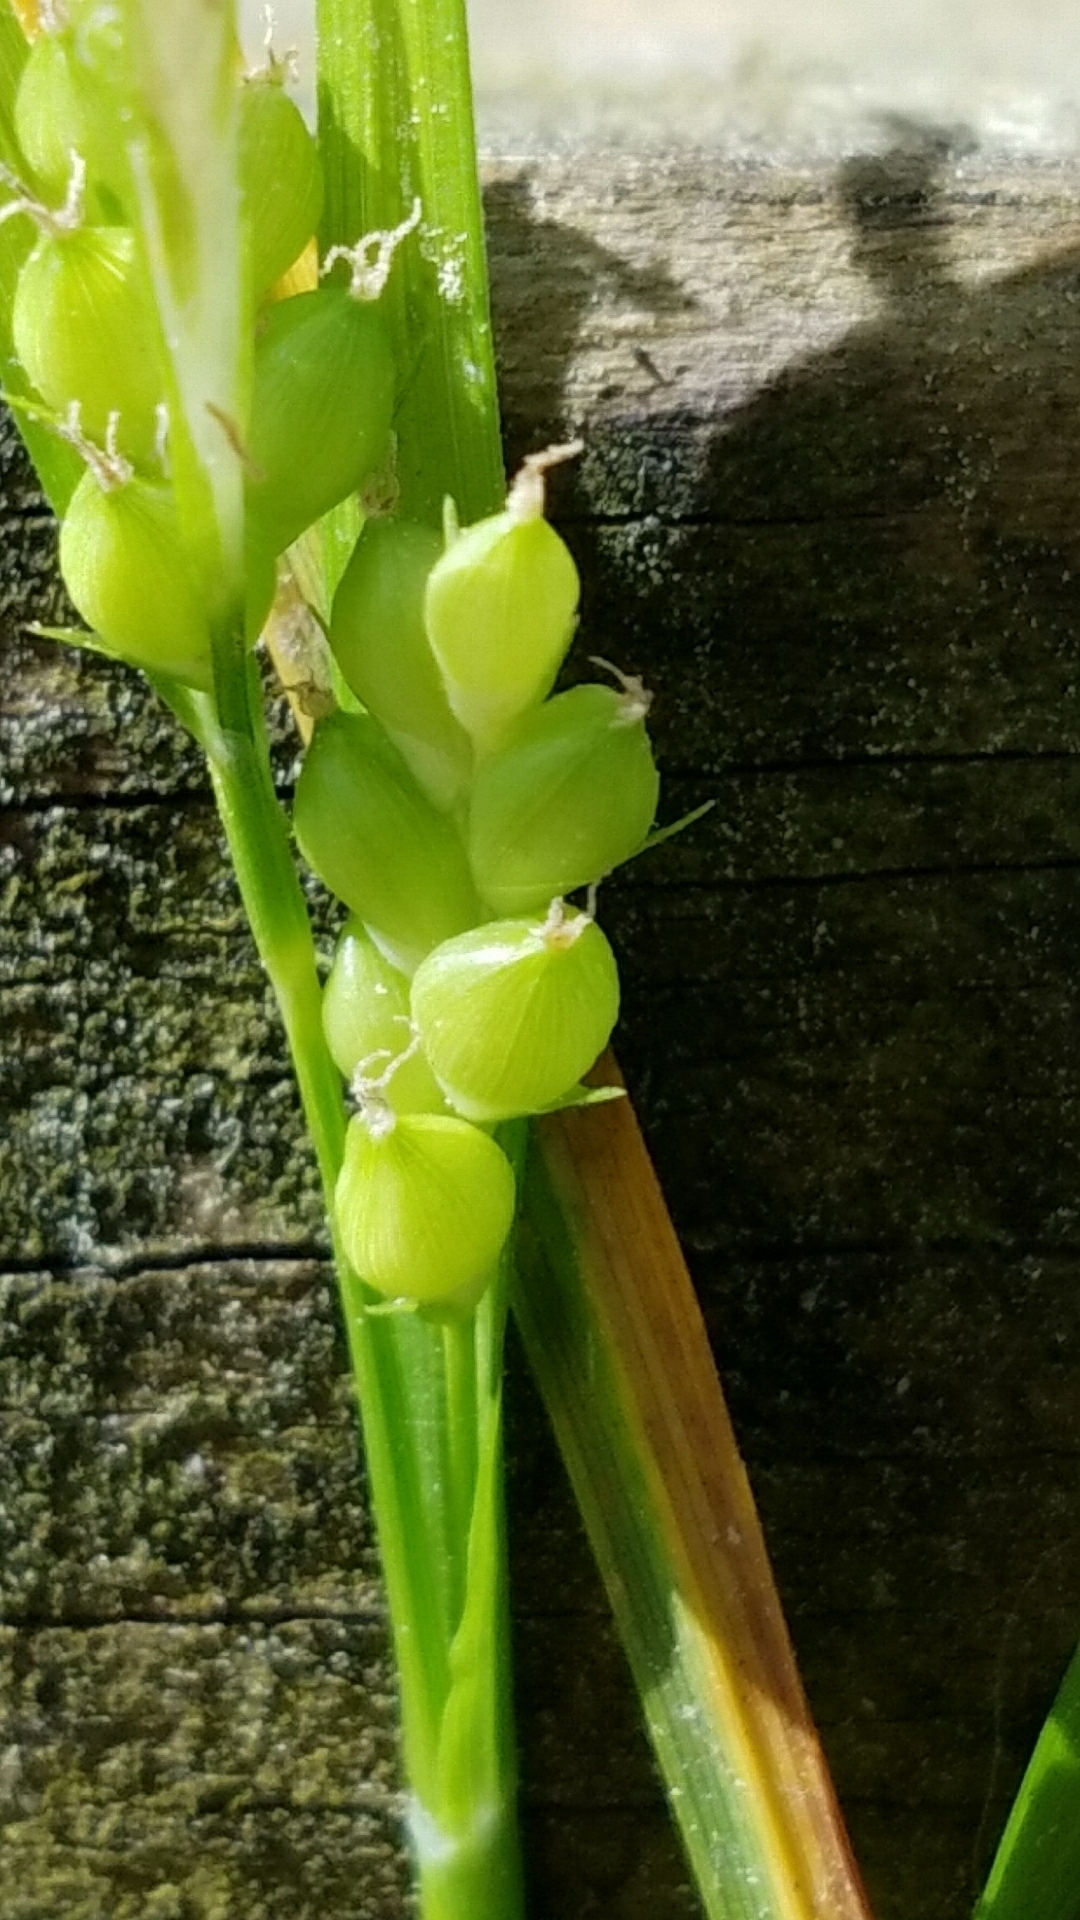 Image of <i>Carex blanda</i>